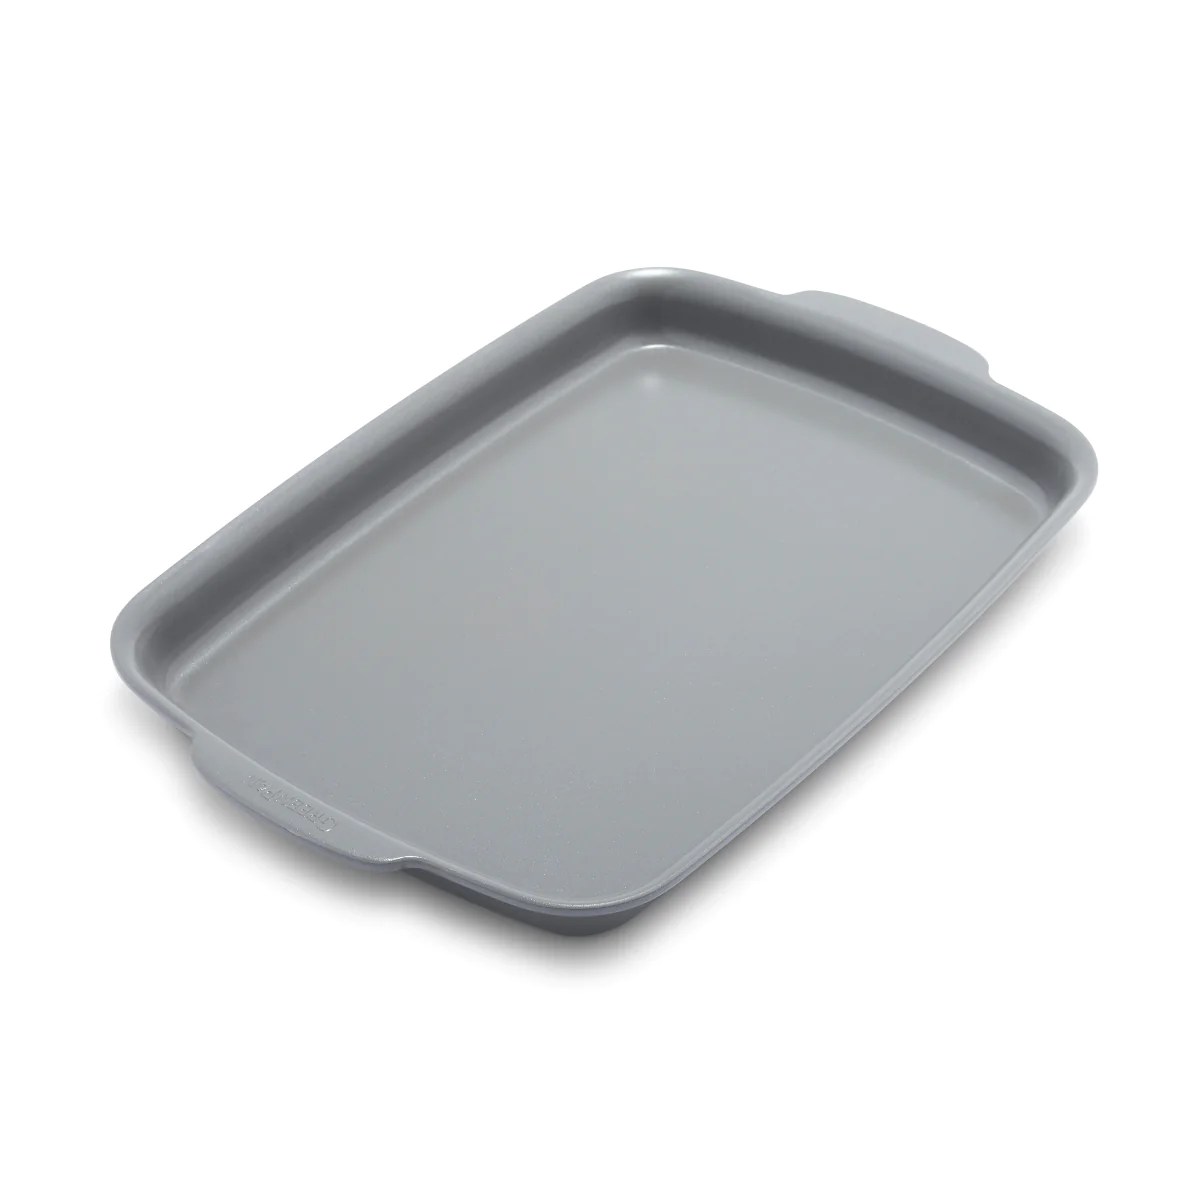 GreenPan sheet pan on sale for thanksgiving